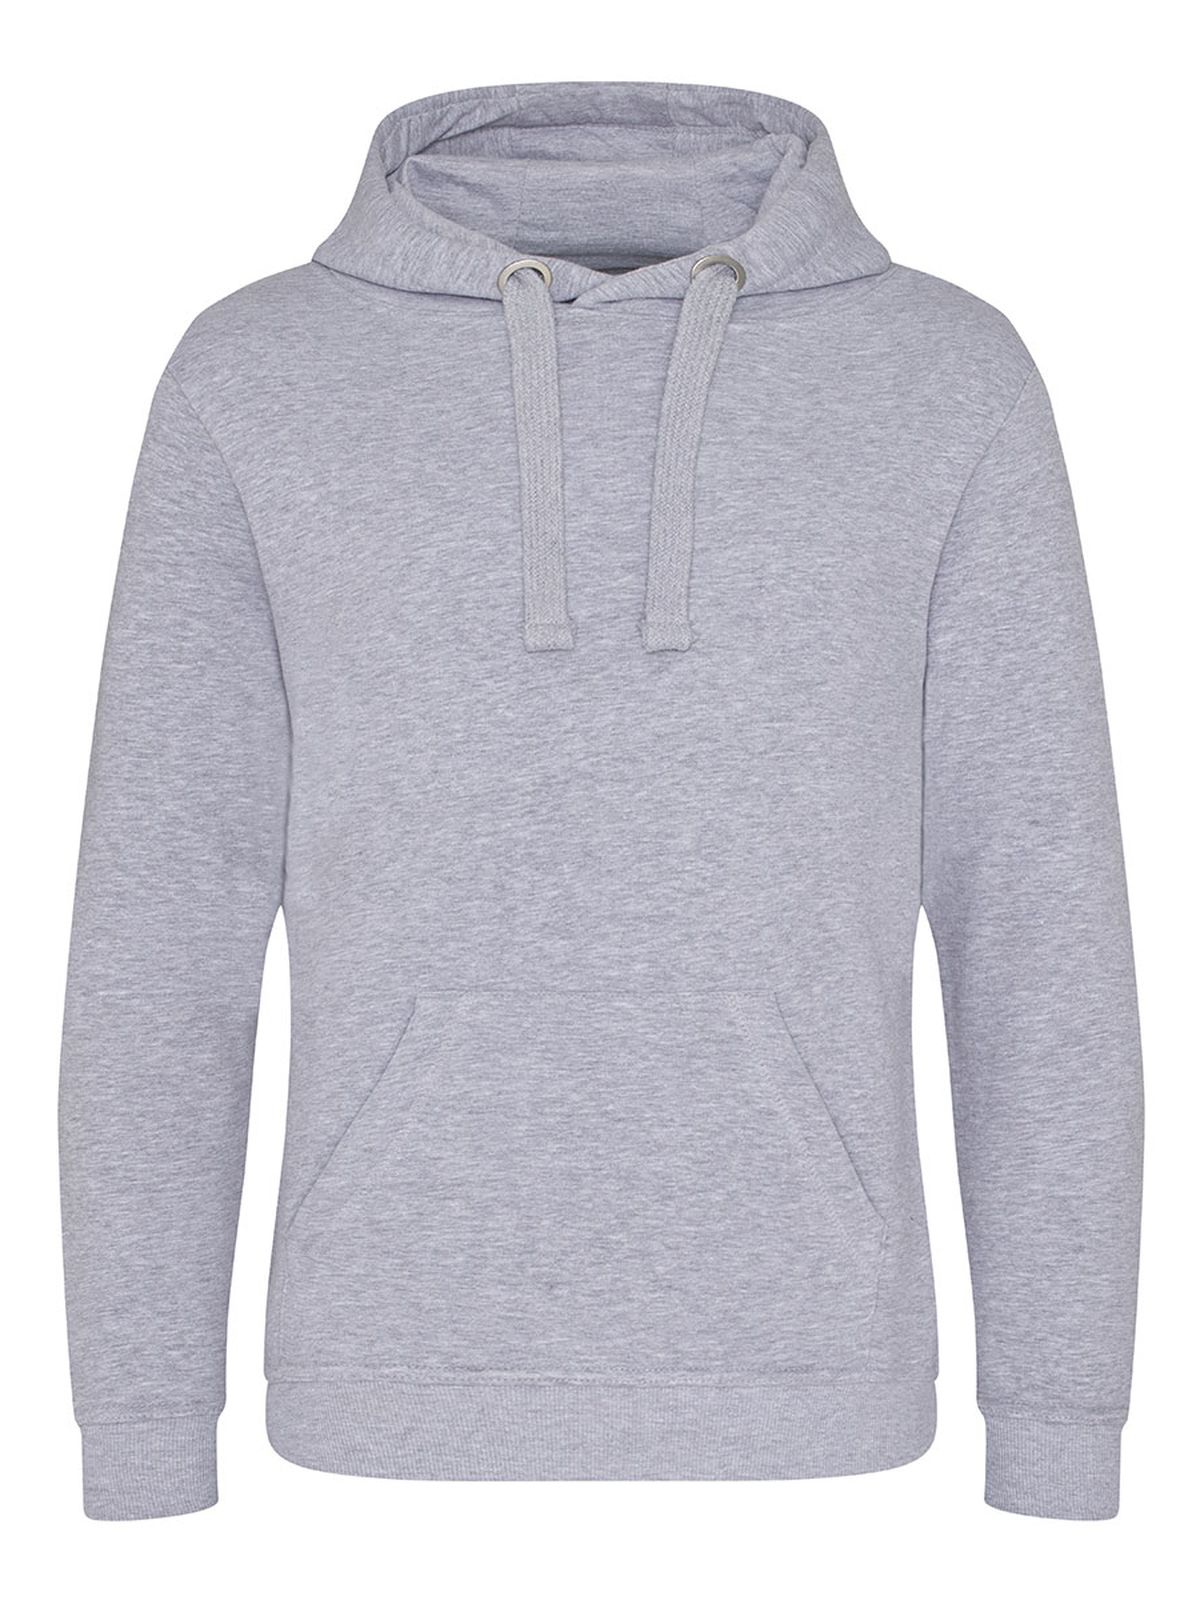 heavyweight-hoodie-heather-grey.webp